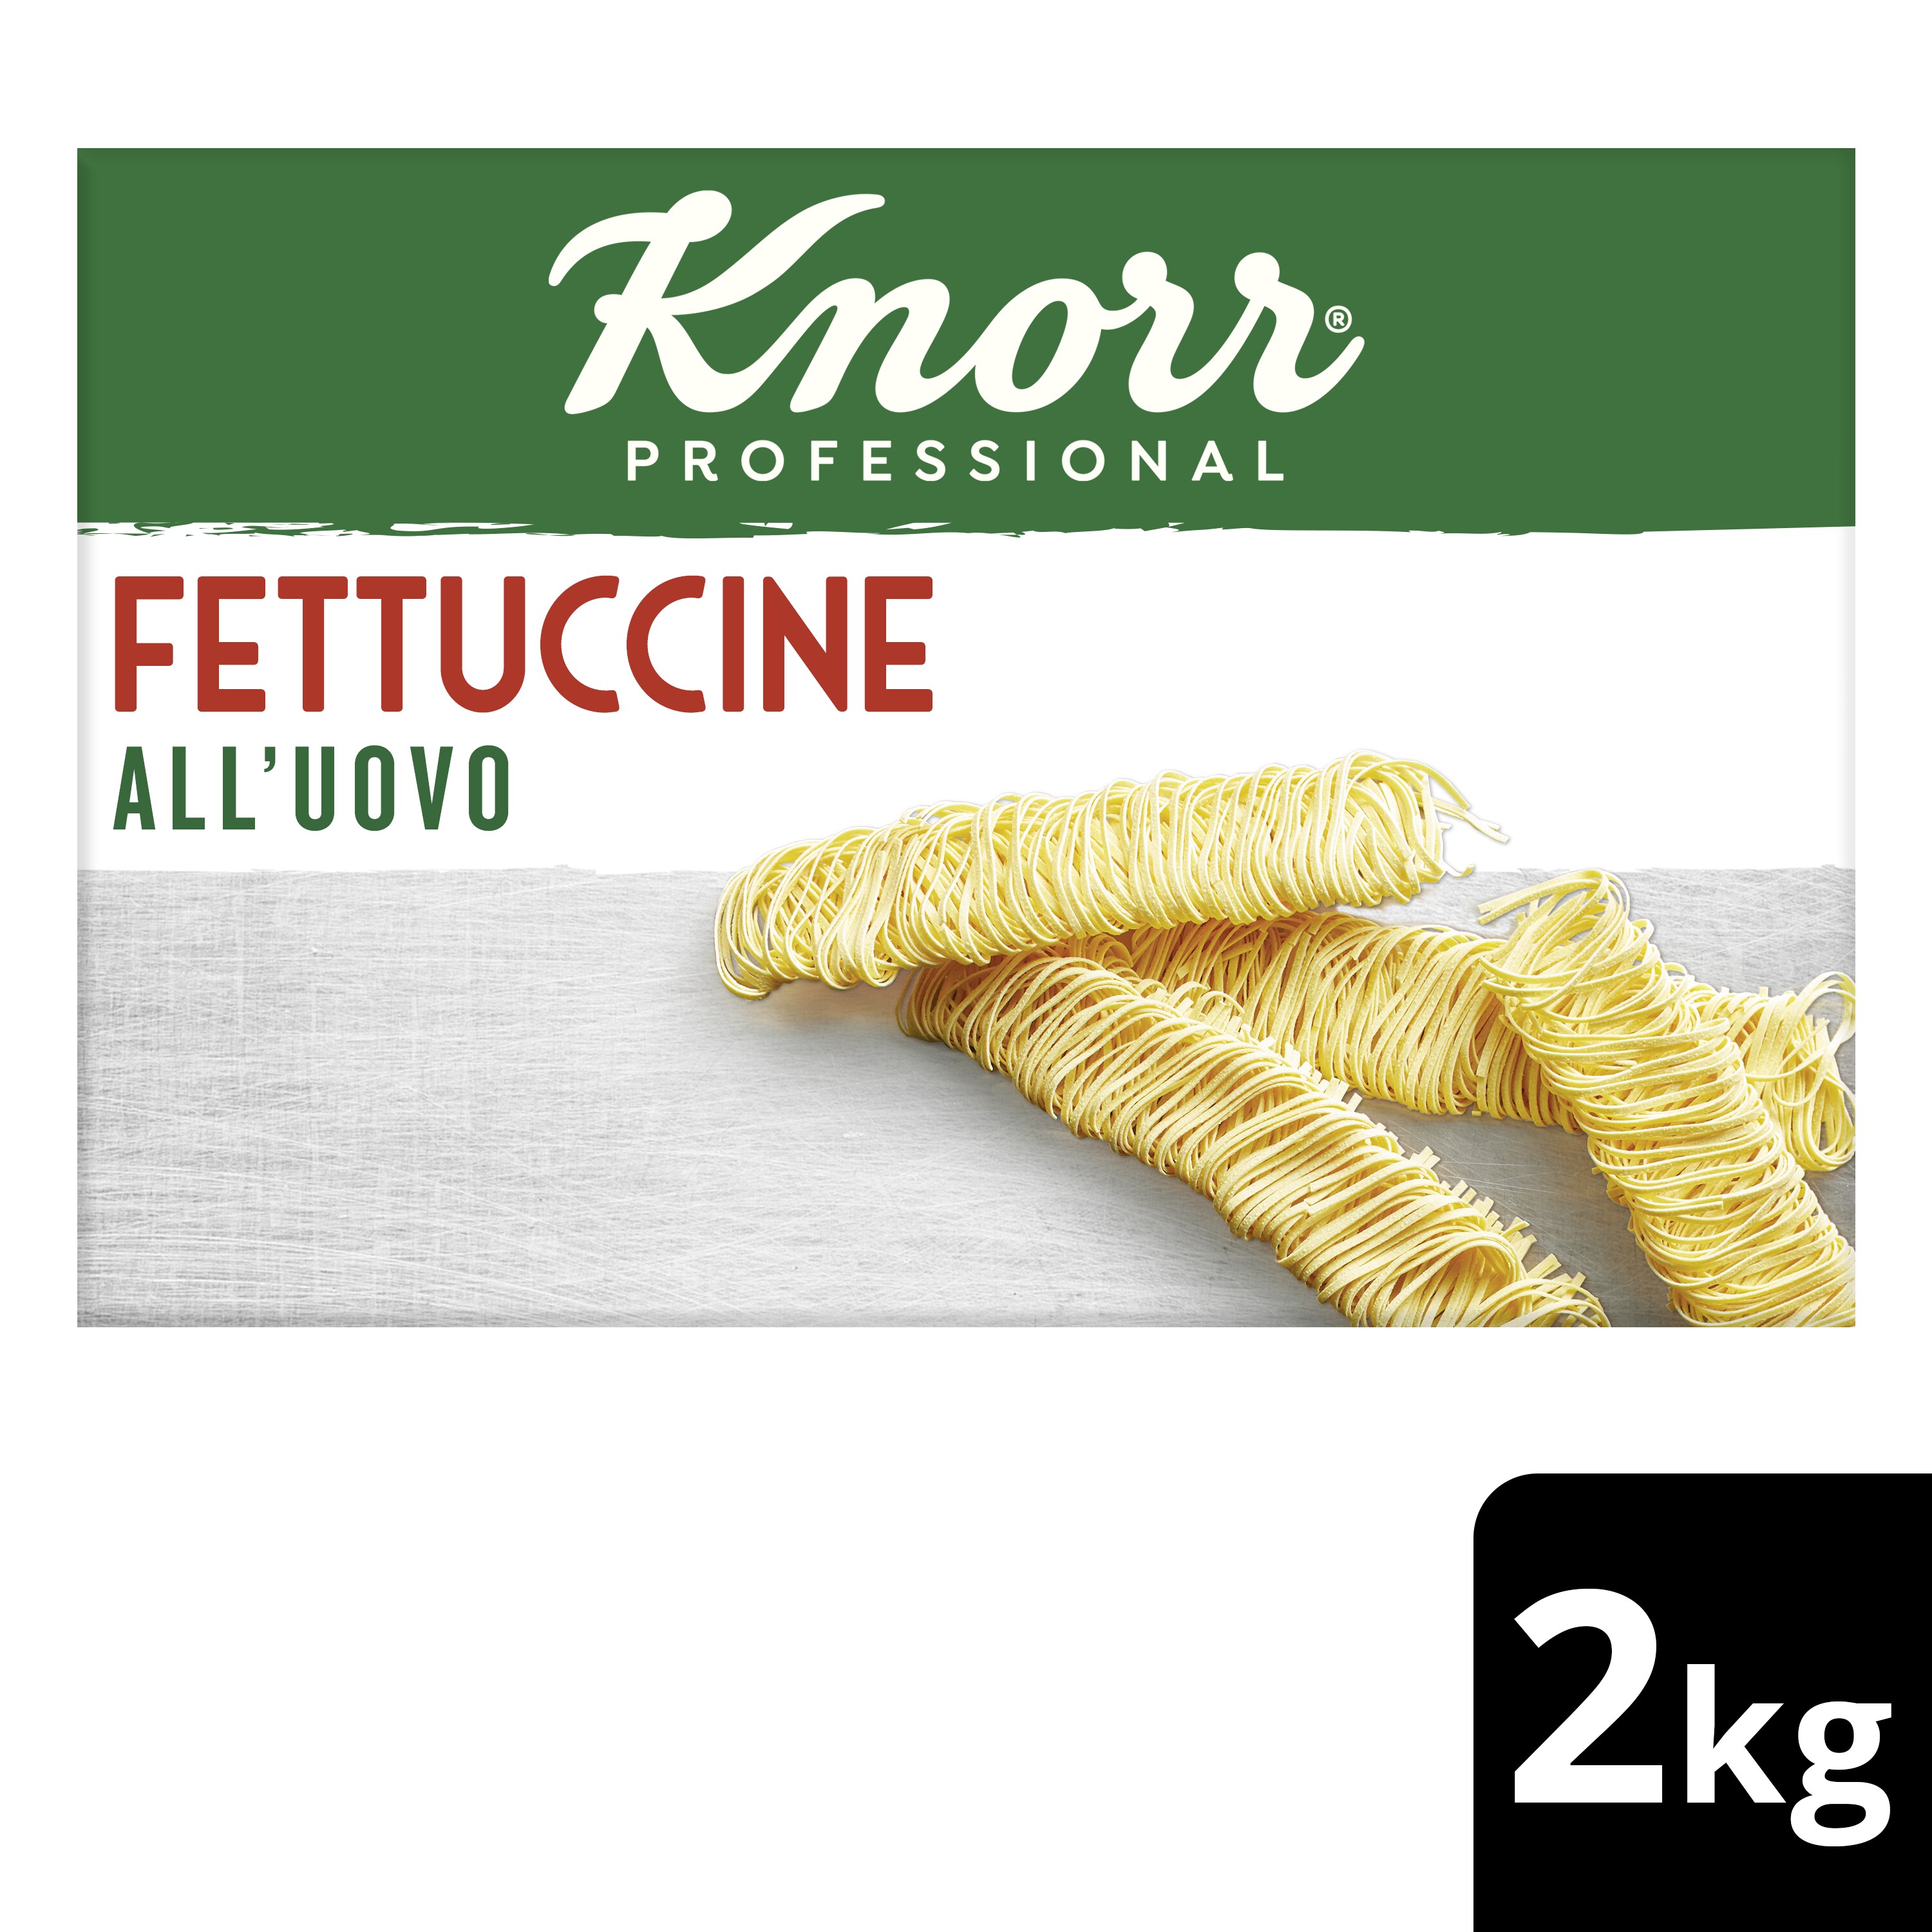 Knorr Professional Italiana Fettuccini a L'Uovo 2kg - 